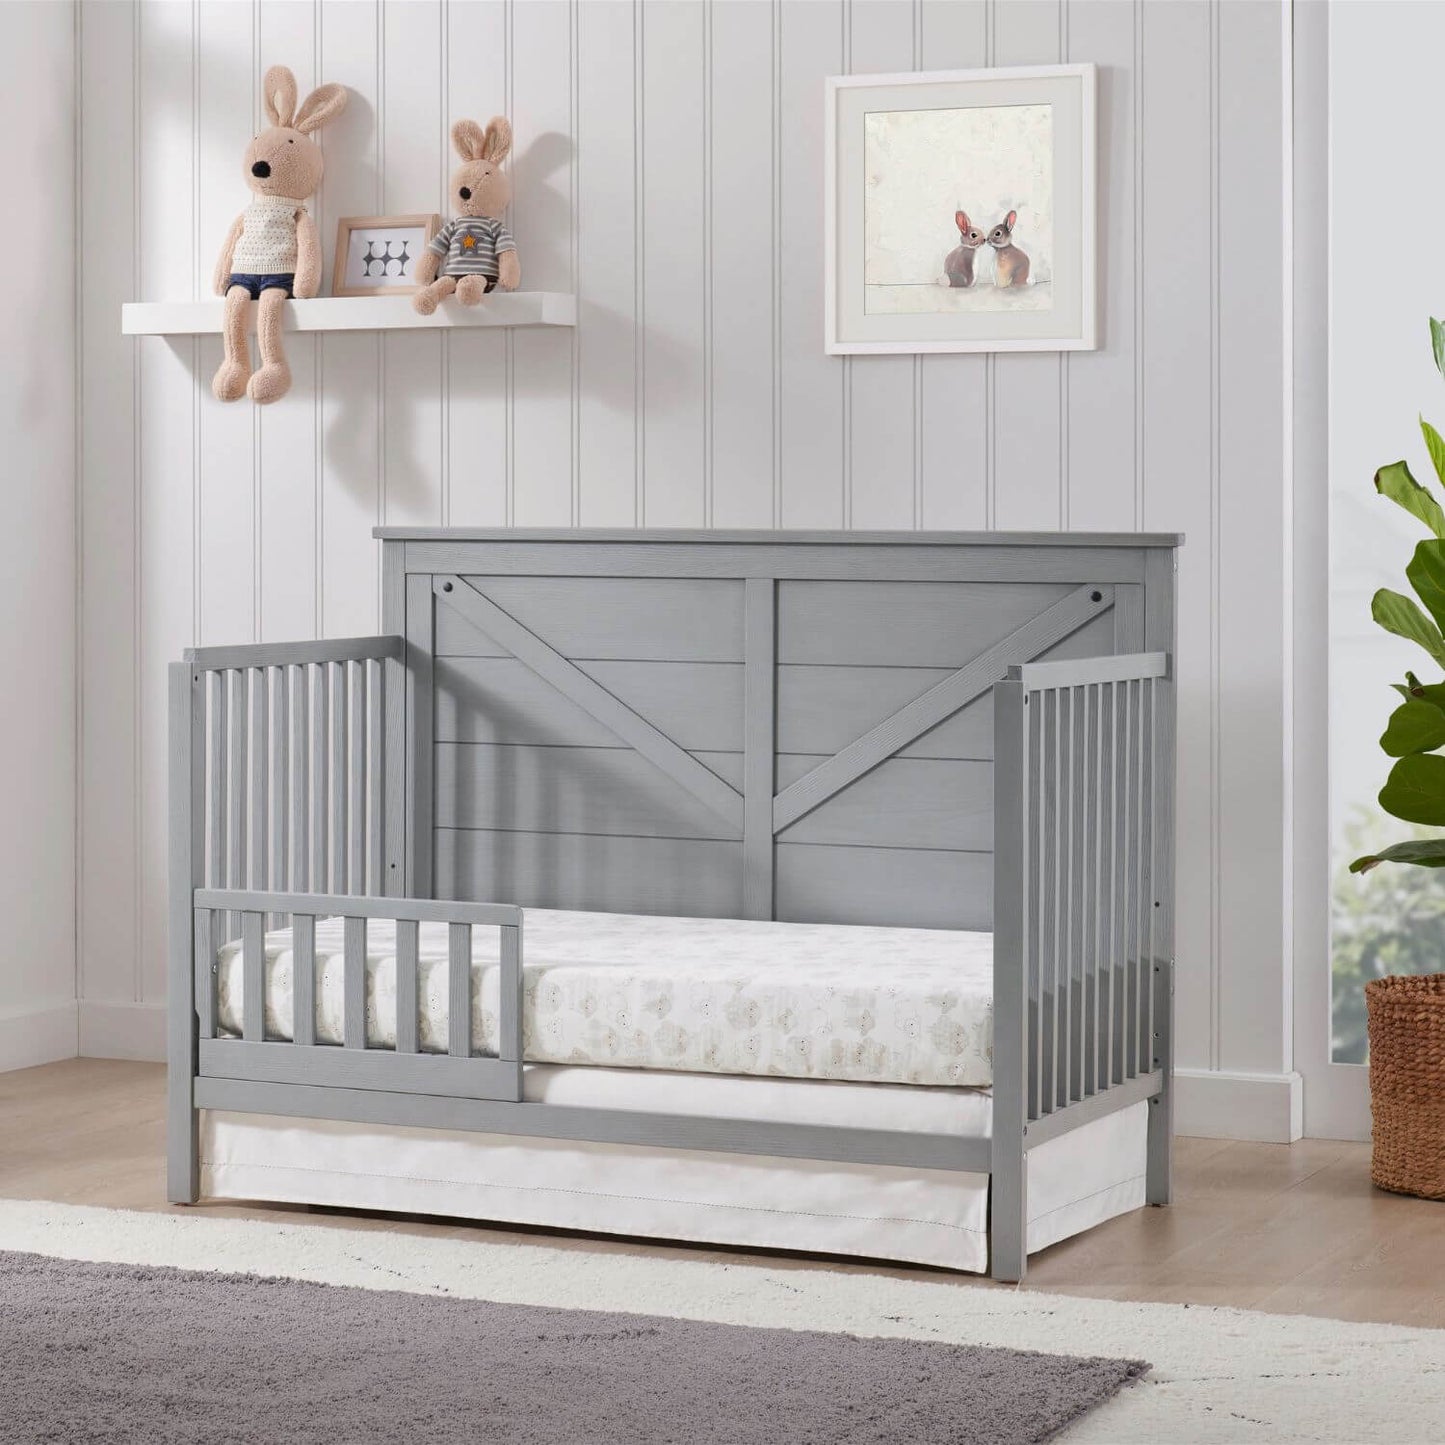 Oxford Baby Montauk 4-in-1 Convertible Crib | Farmhouse Gray